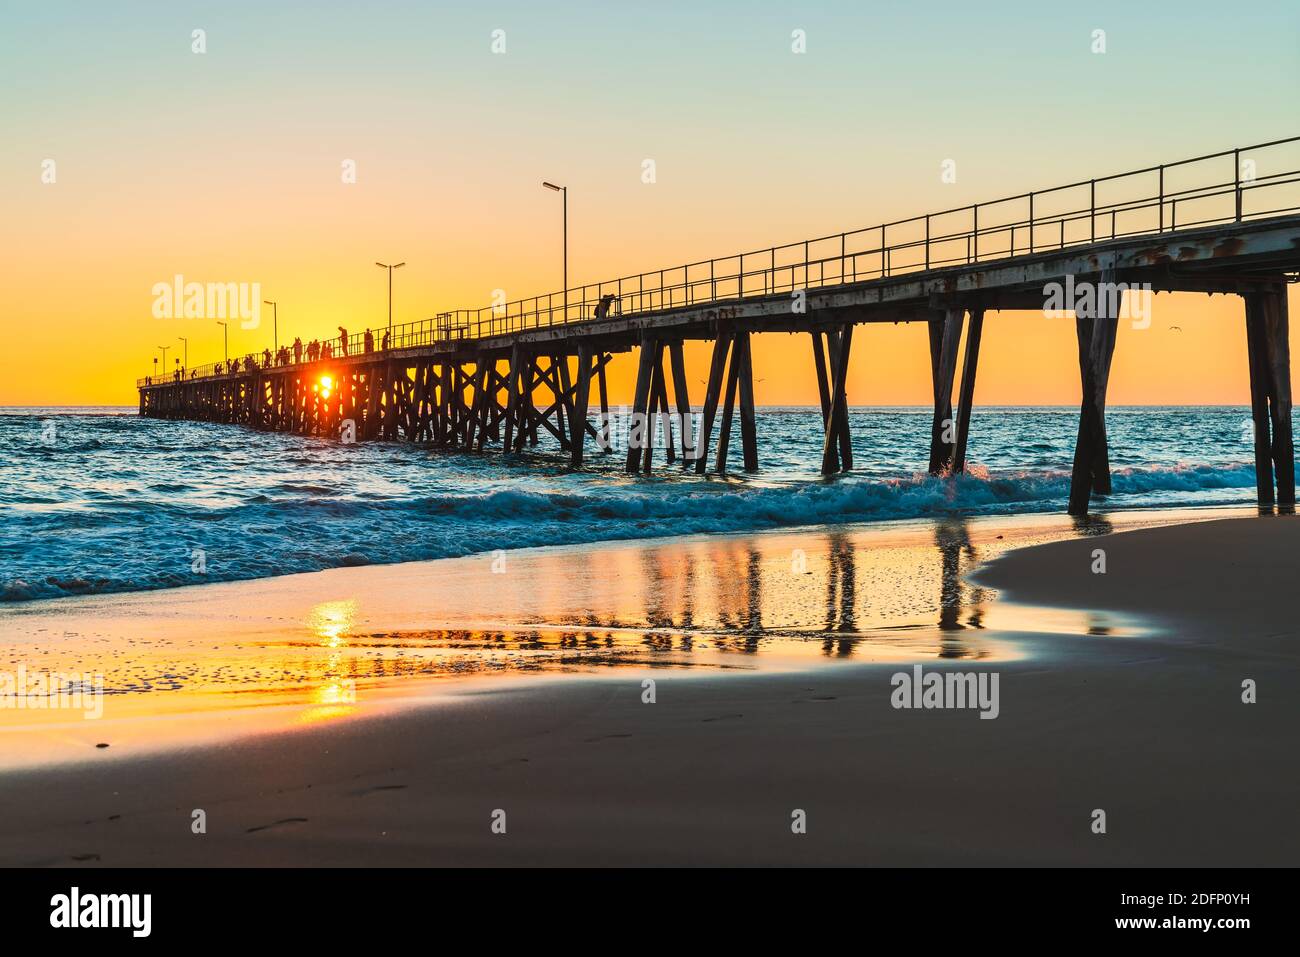 Personnes pêchant sur la jetée de Port Noarlunga au coucher du soleil, Australie méridionale Banque D'Images